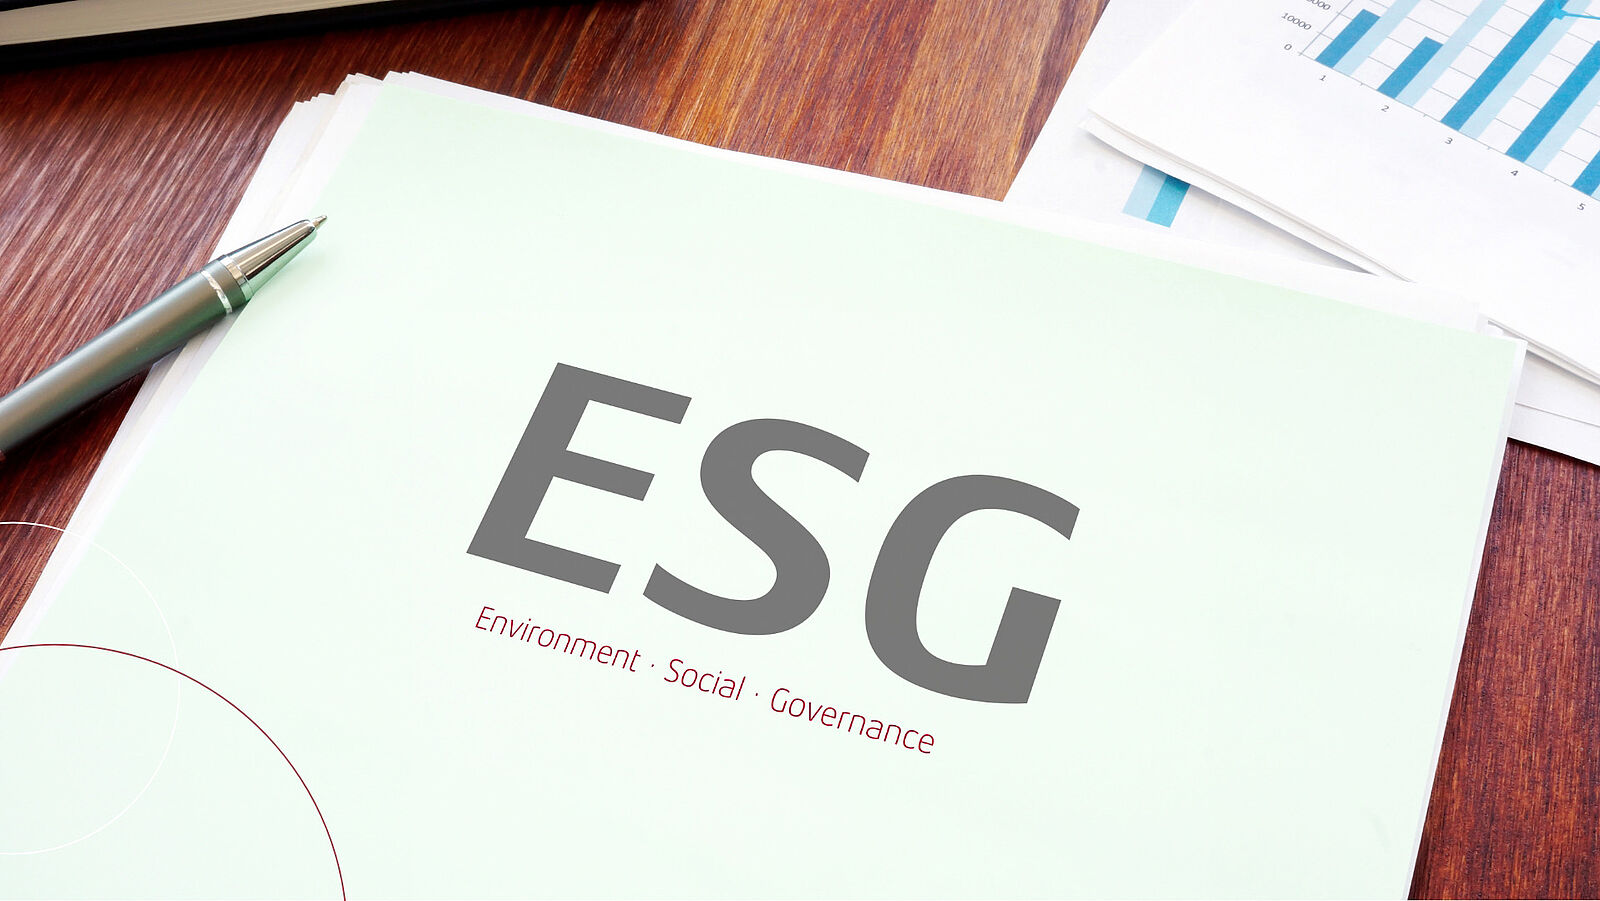 Eine Arbeitsmappe mit der Aufschrift ESG: Environment, Social, Governance liegt auf einem Schreibtisch. Oben rechts in der Ecke sind Ausdrucke von Balkendiagrammen zu sehen.